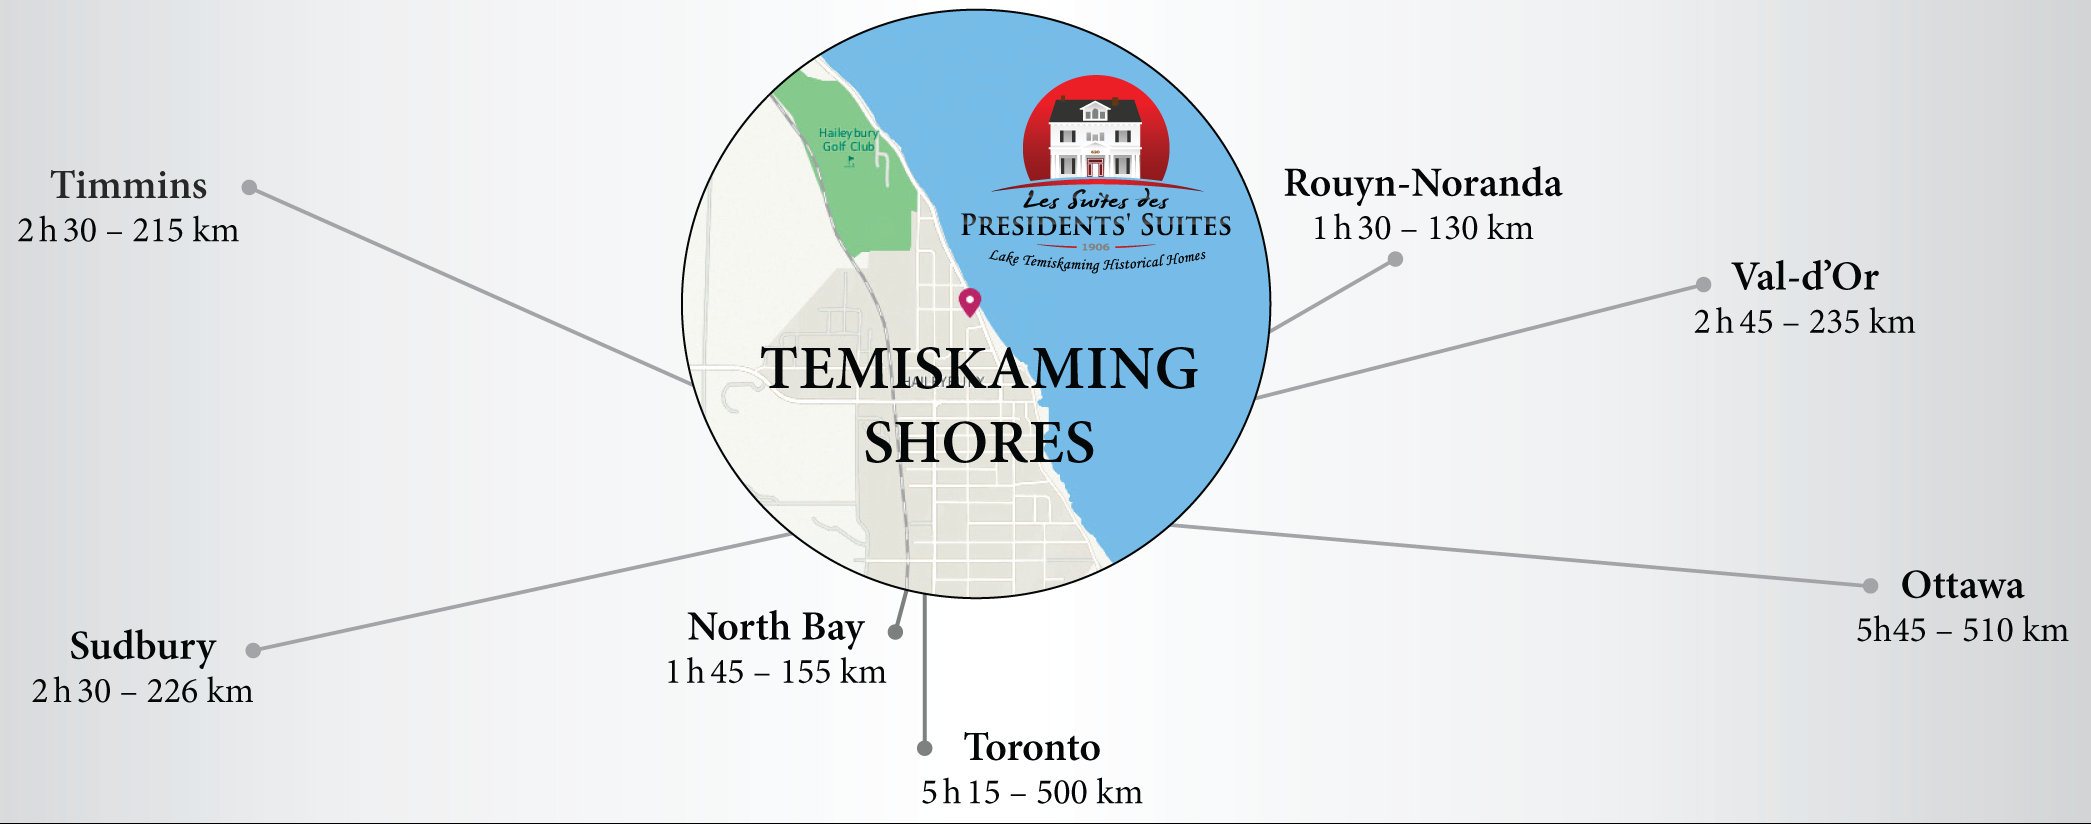 Temiskaming Shores est situé stratégiquement dans le nord-est de l'Ontario